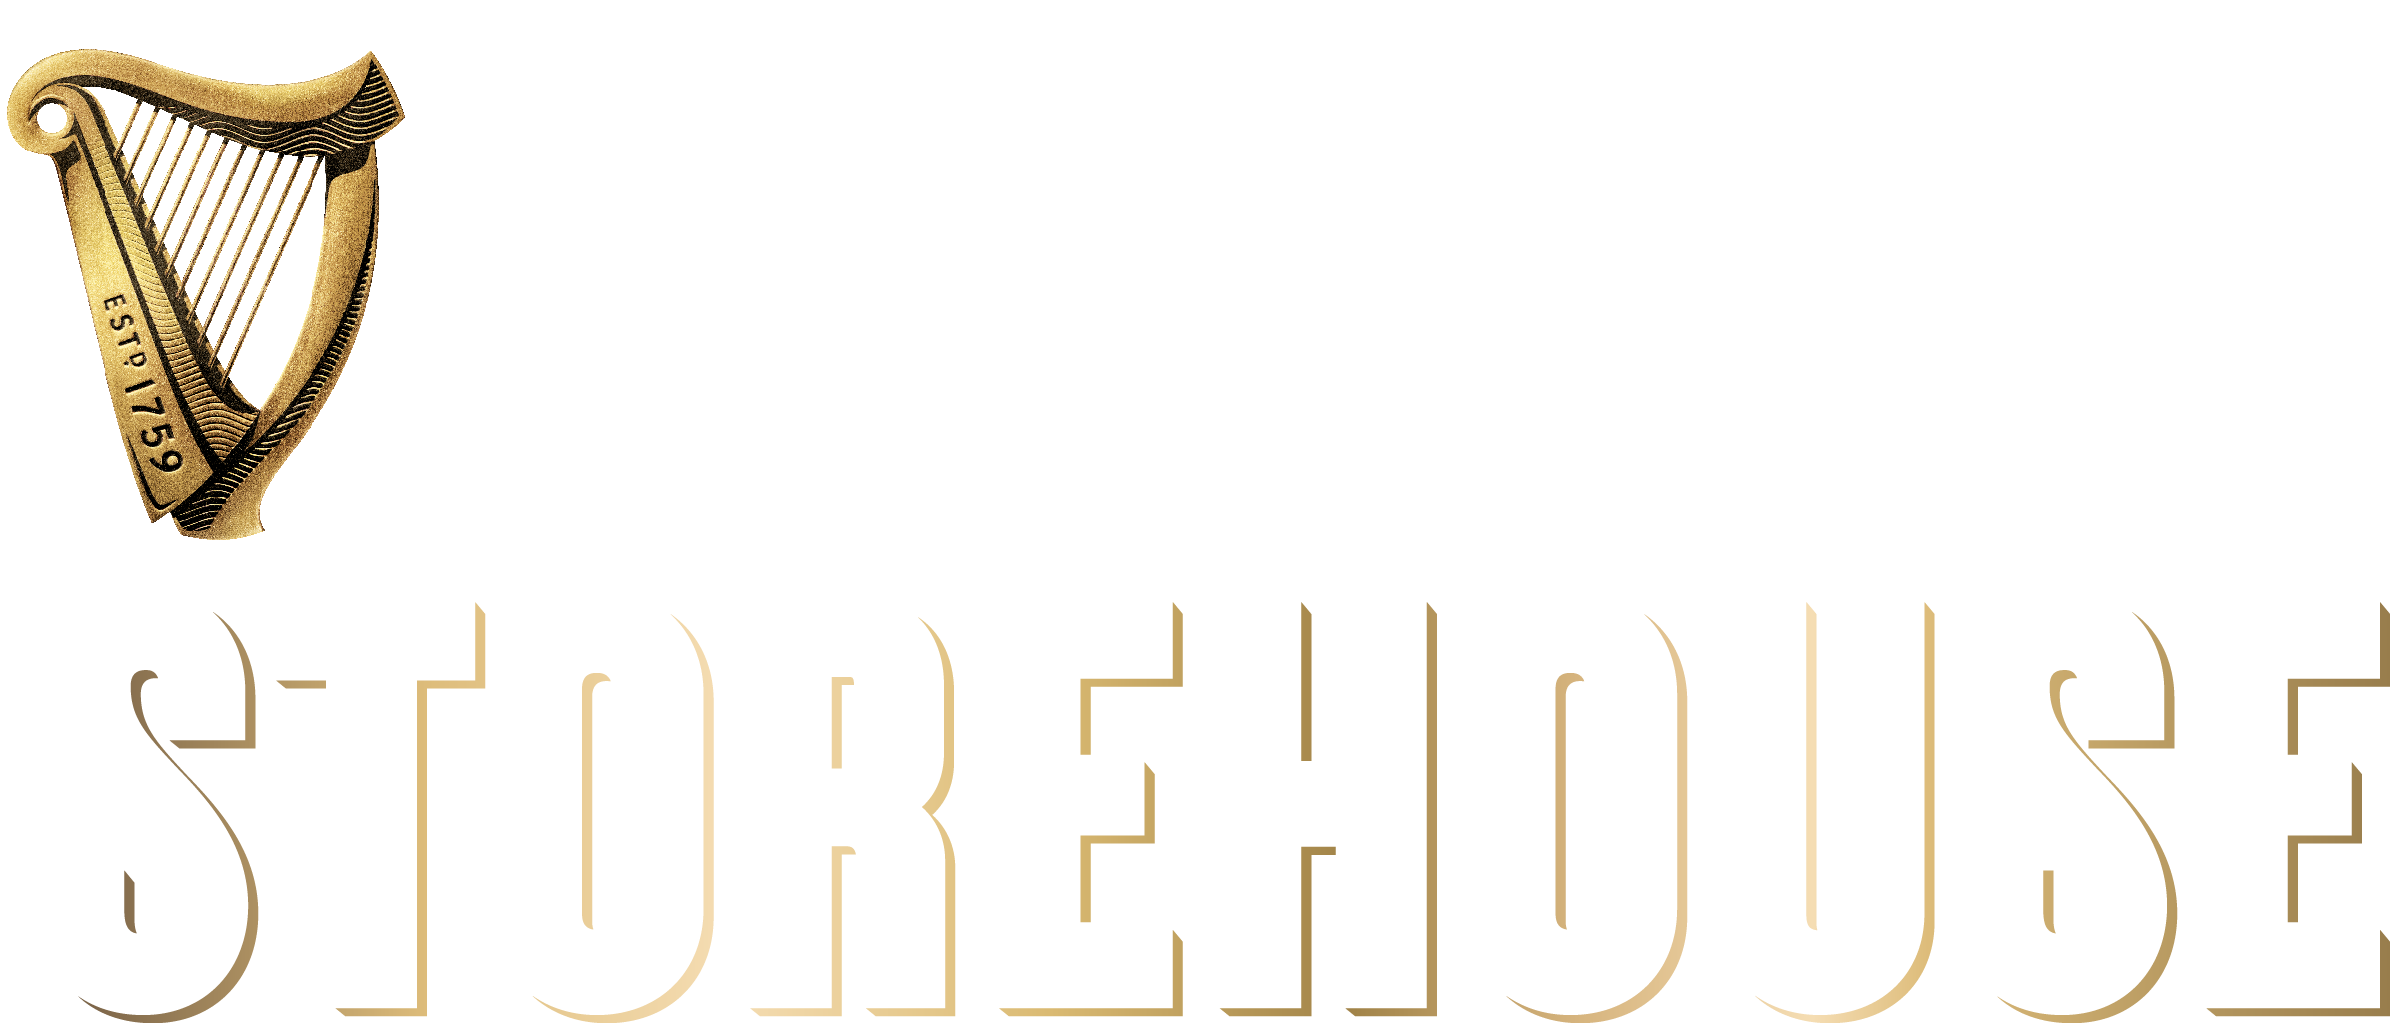 guinness logo png